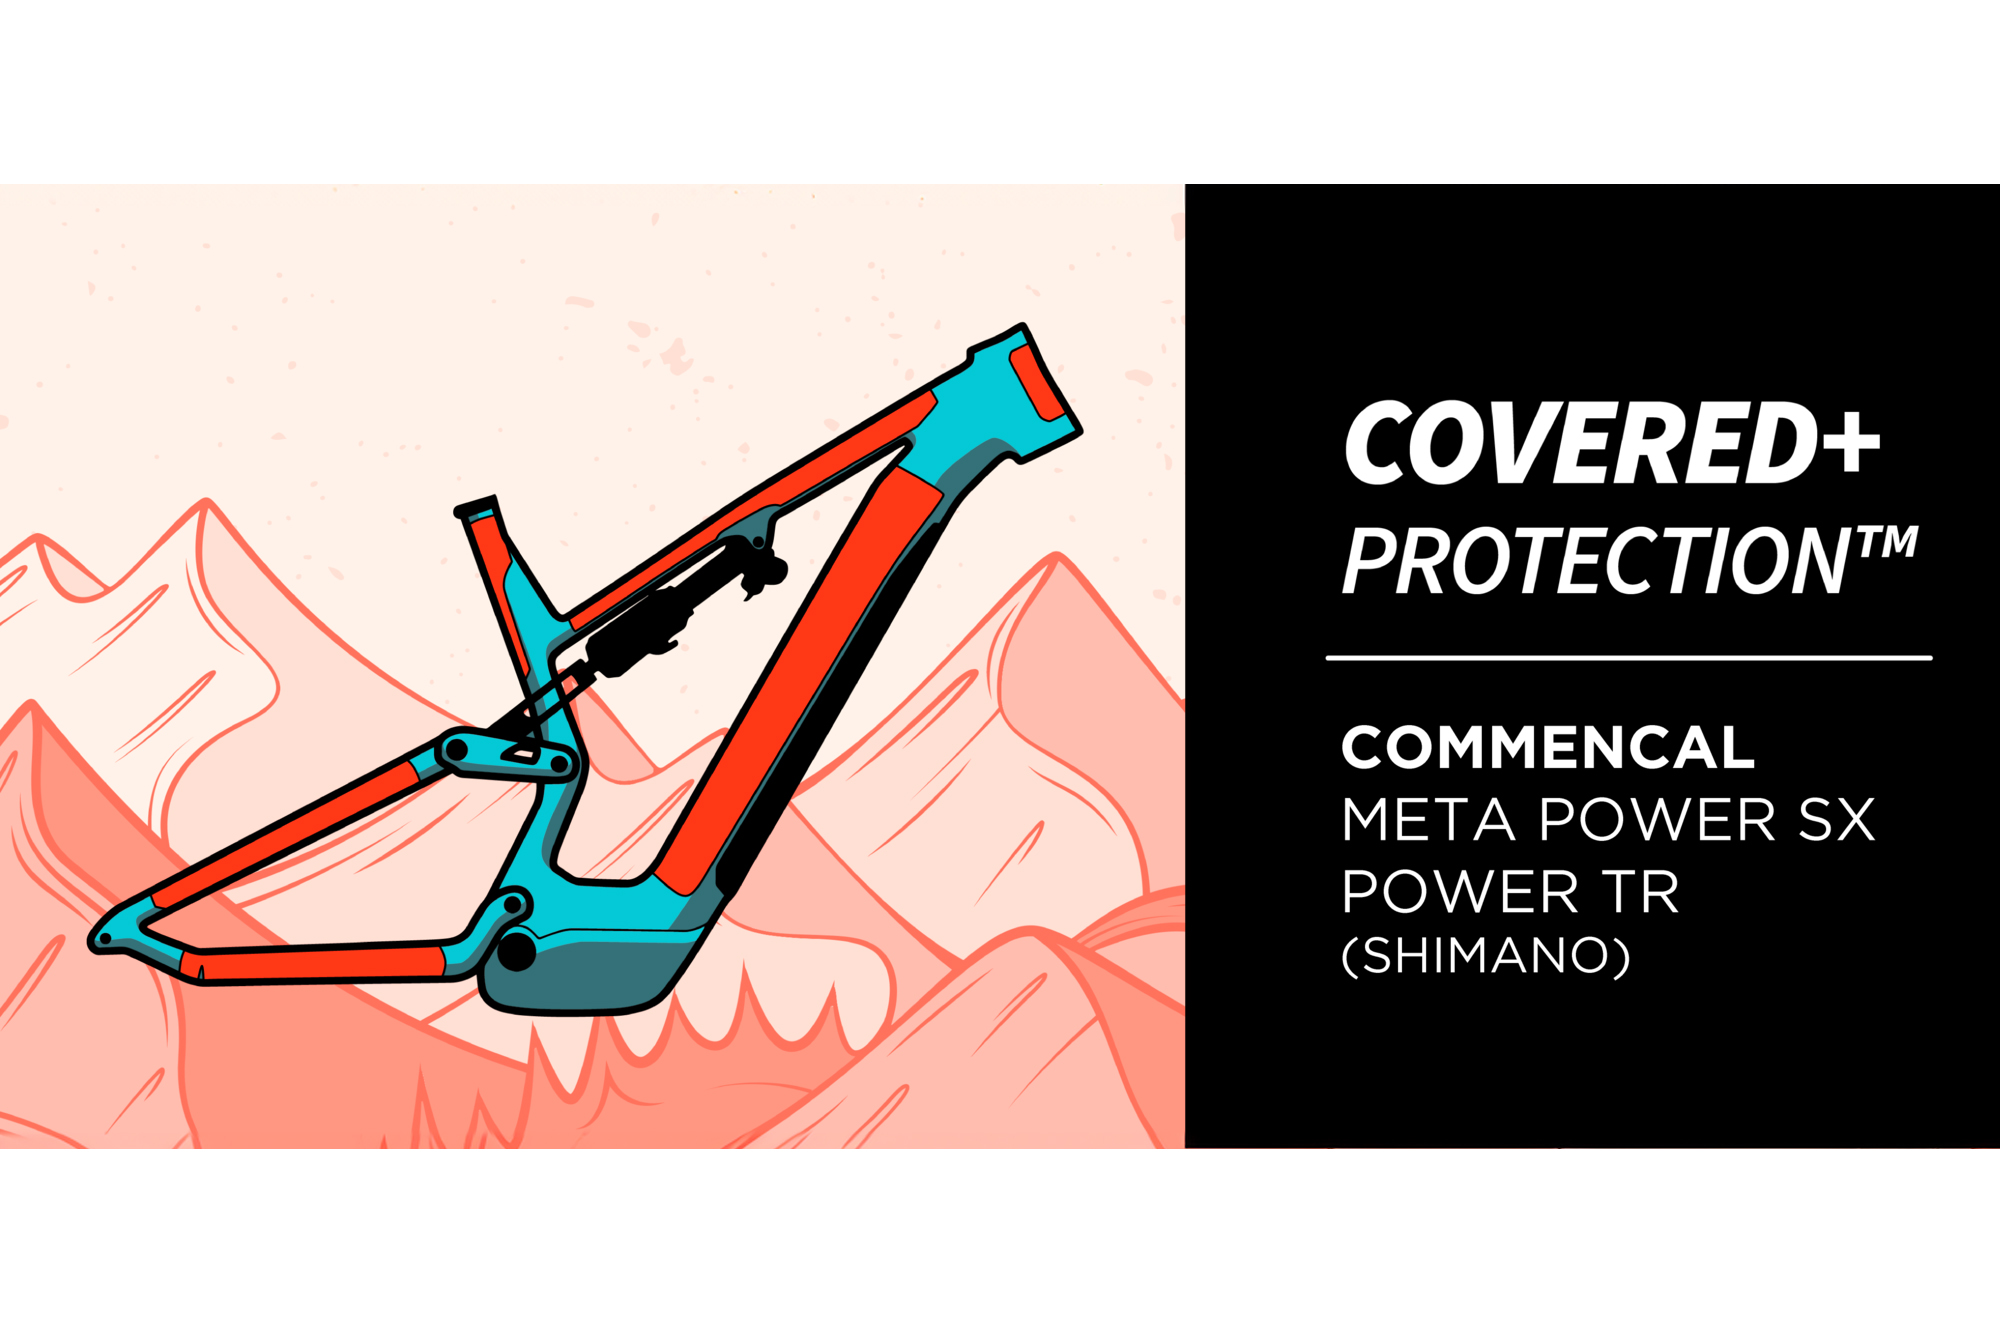 PROTECCIÓN DE CUADRO RIDEWRAP COVERED+ MATE - META POWER SHIMANO image number null